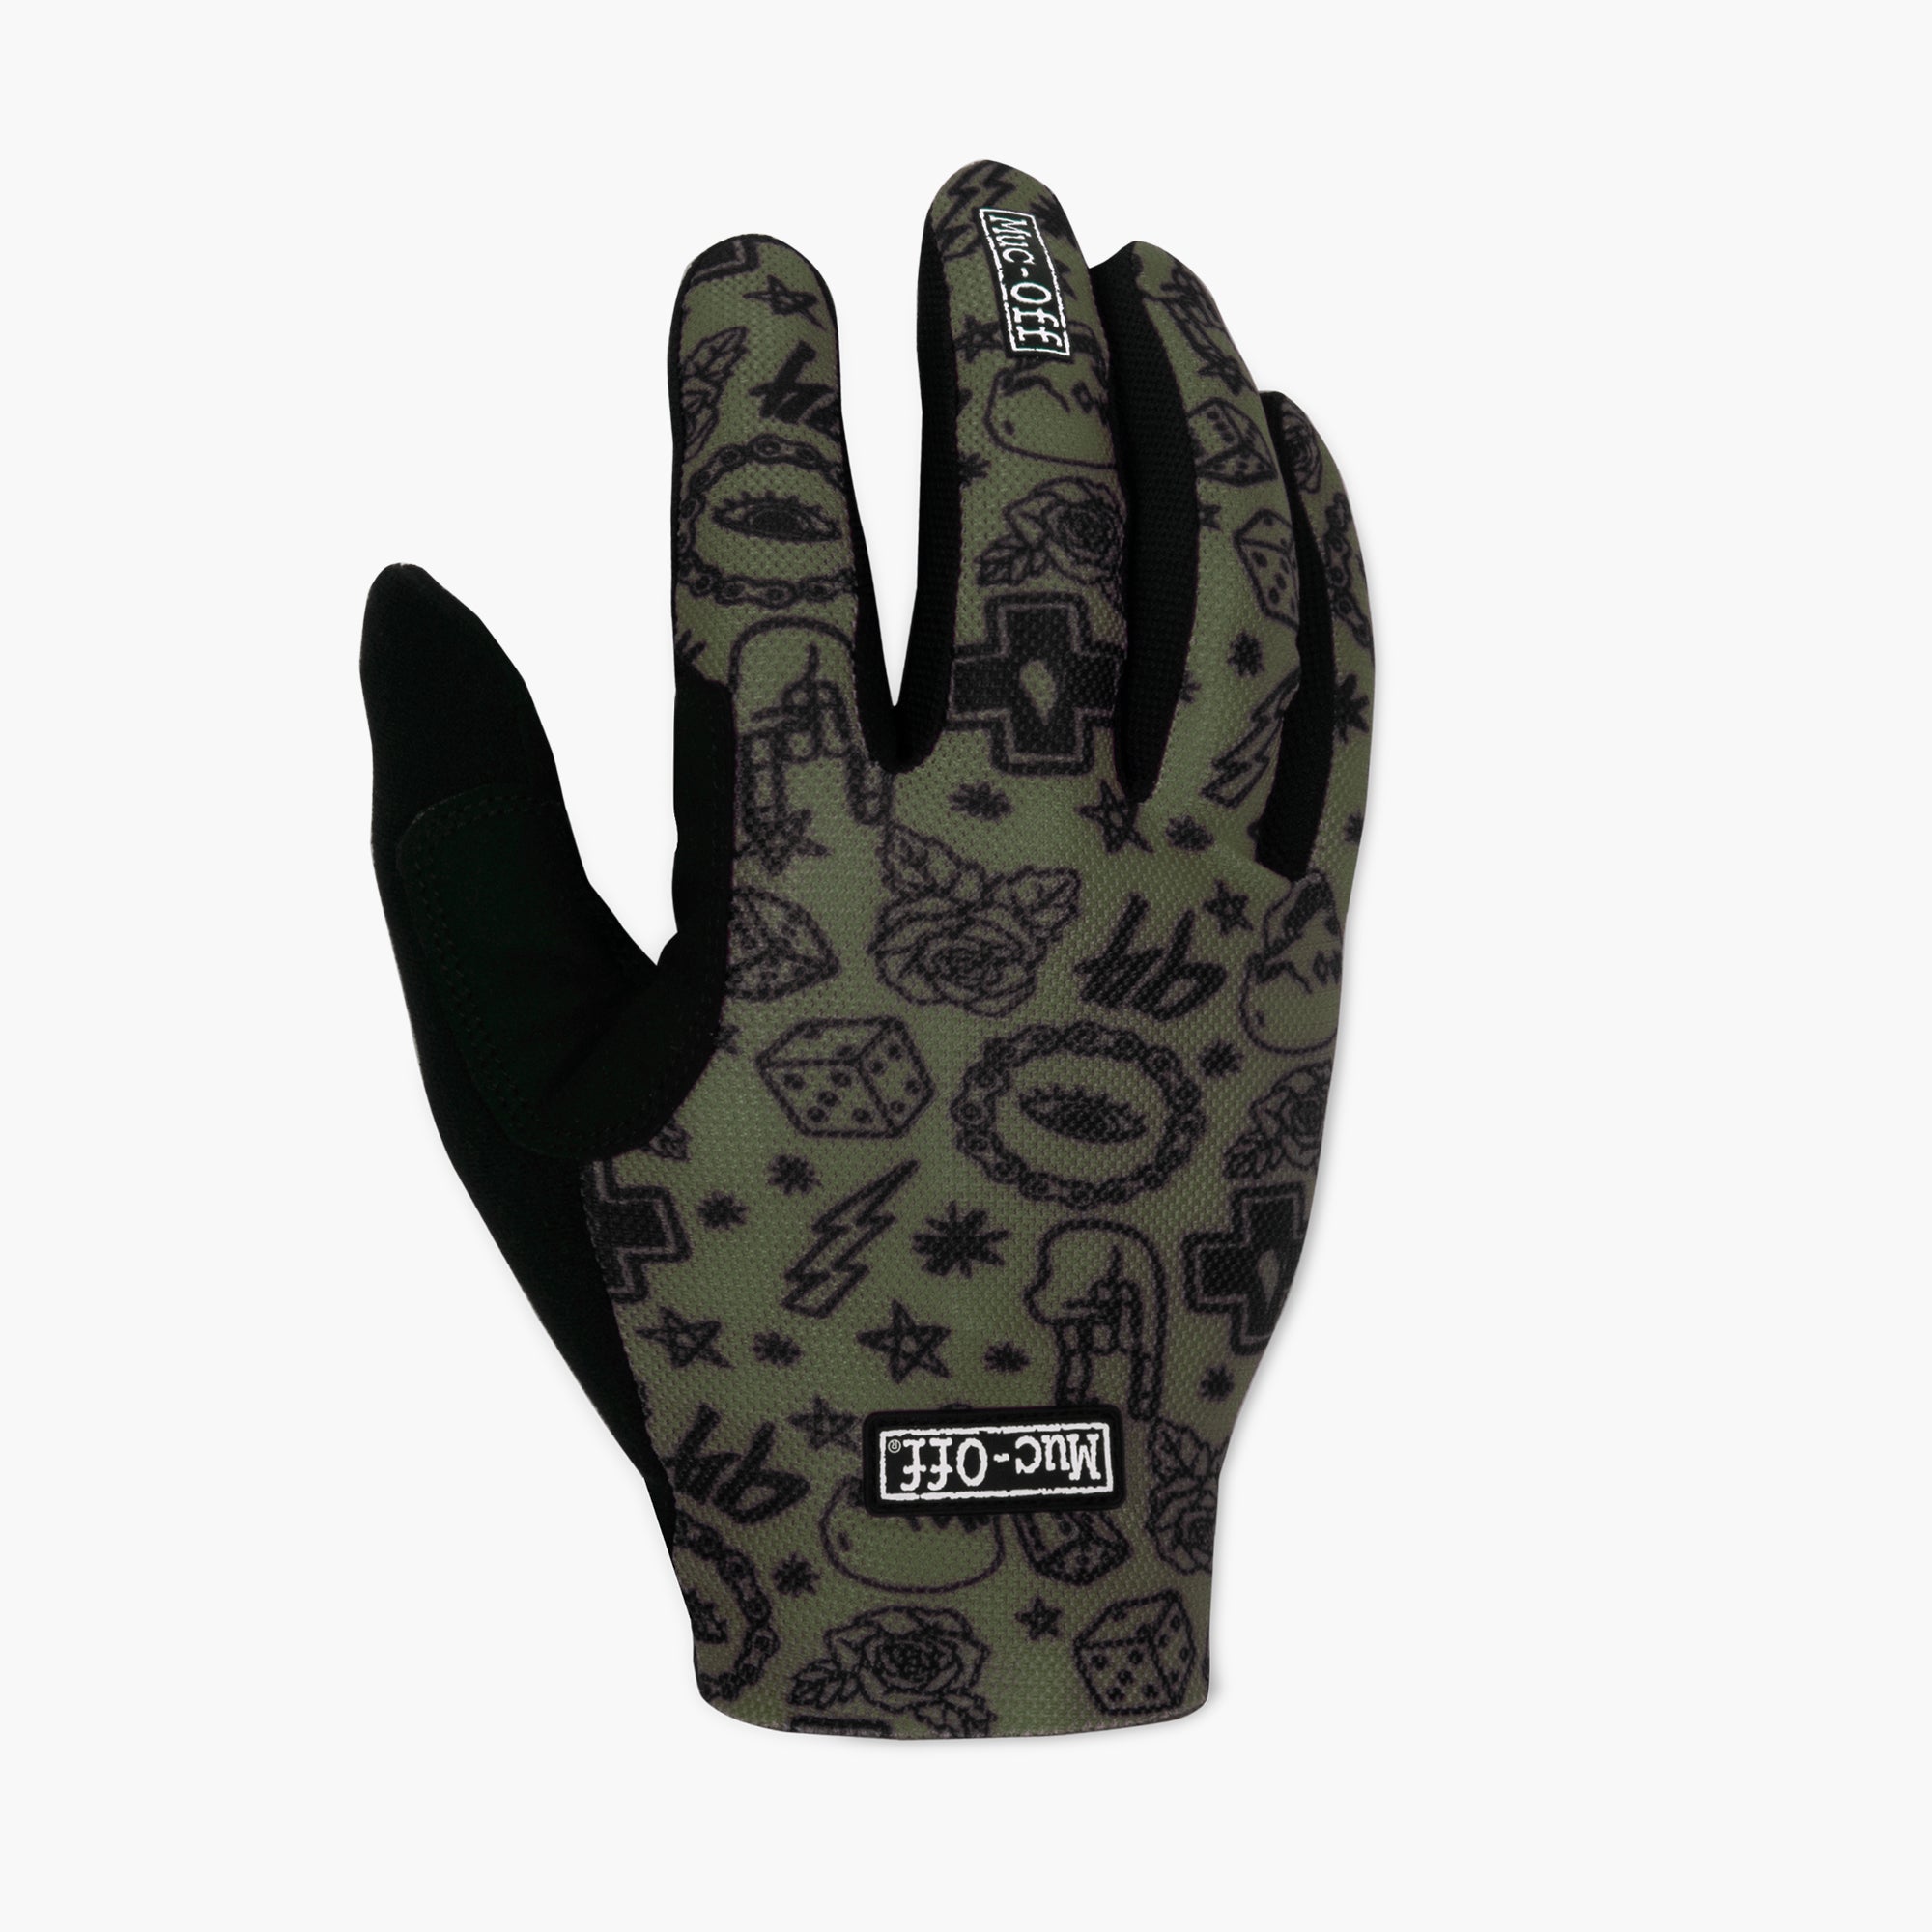 Photos - Cycling Gloves Summer Lightweight Mesh Rider Gloves - Green S 